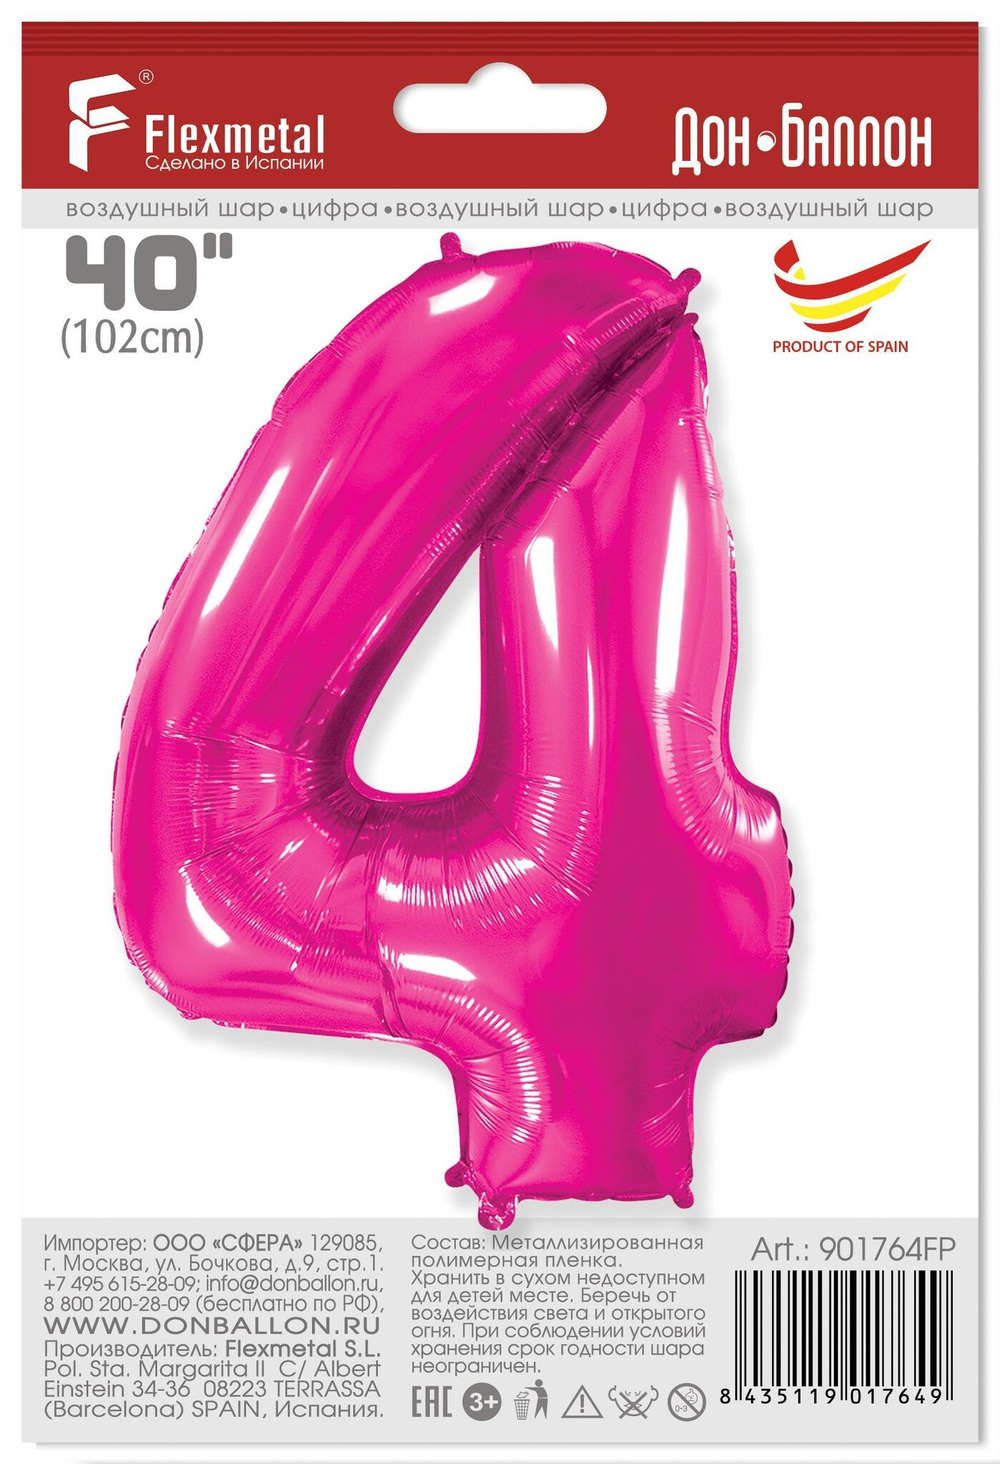 Воздушный шар фольгированный, М40/102см, Flexmetal "Цифра 4", розовый